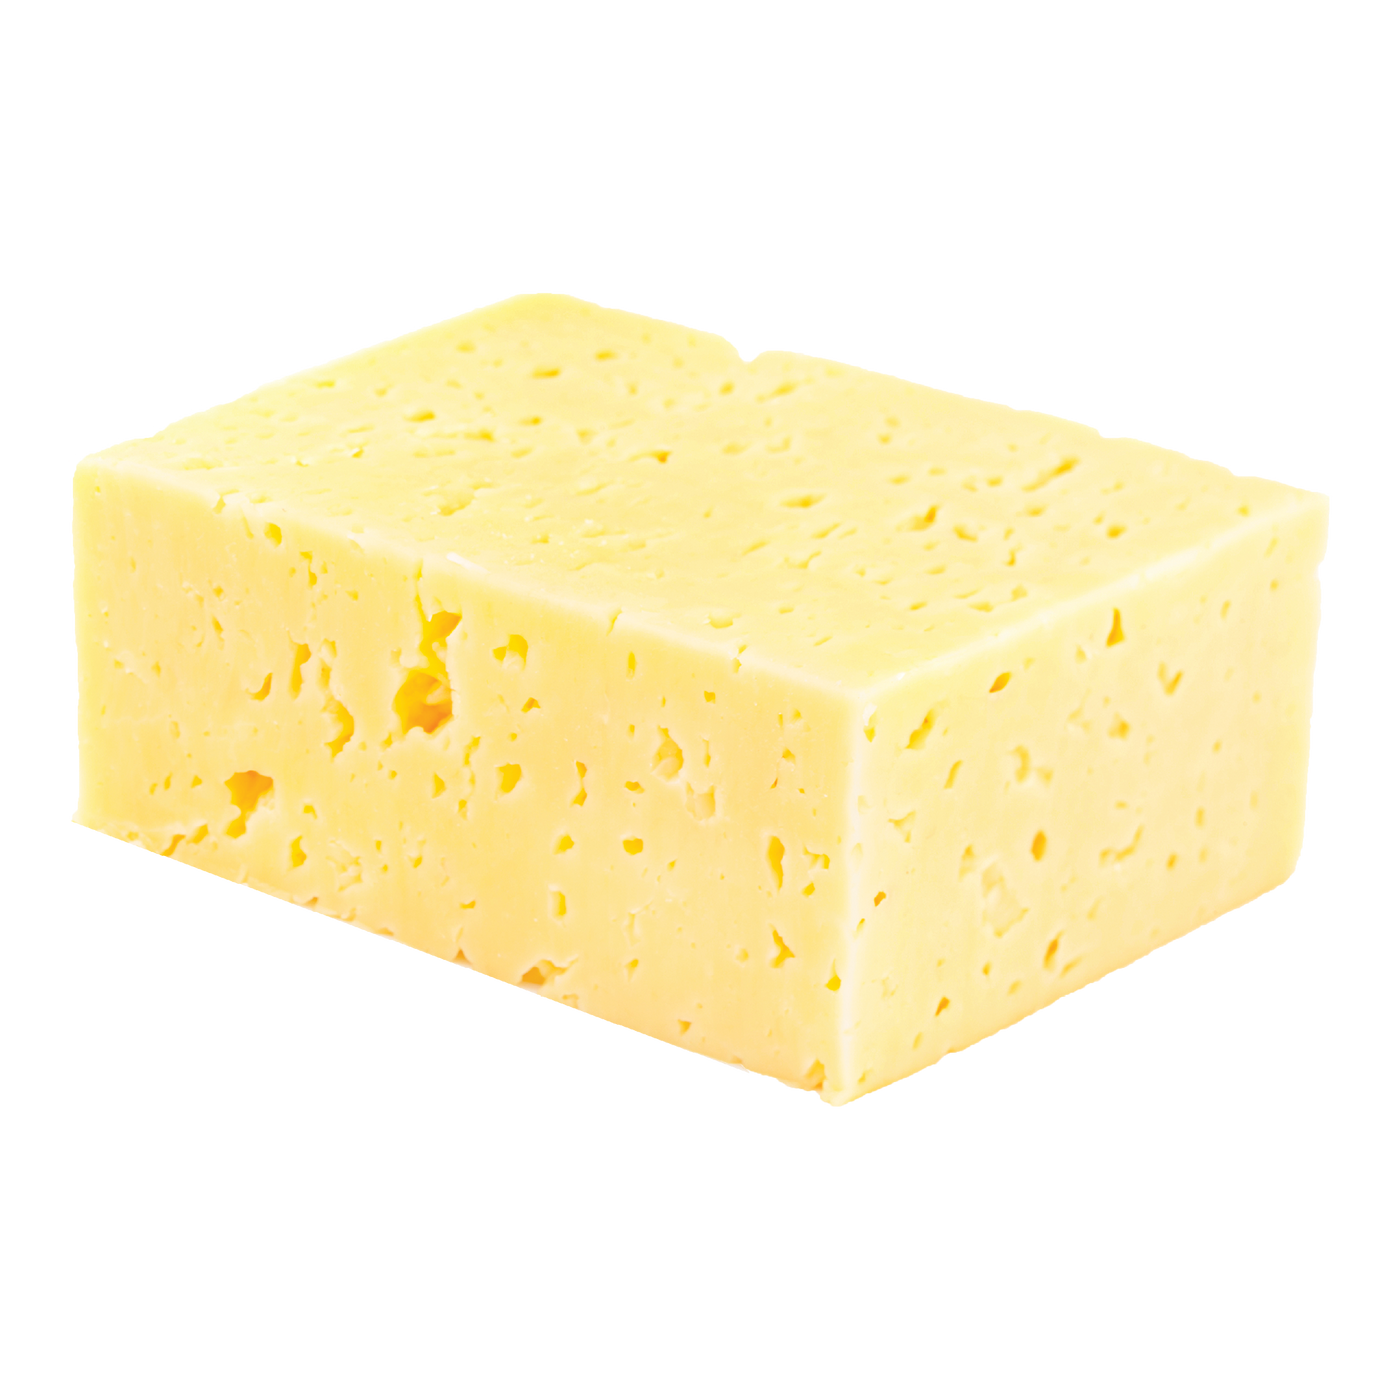 Havarti Cheese